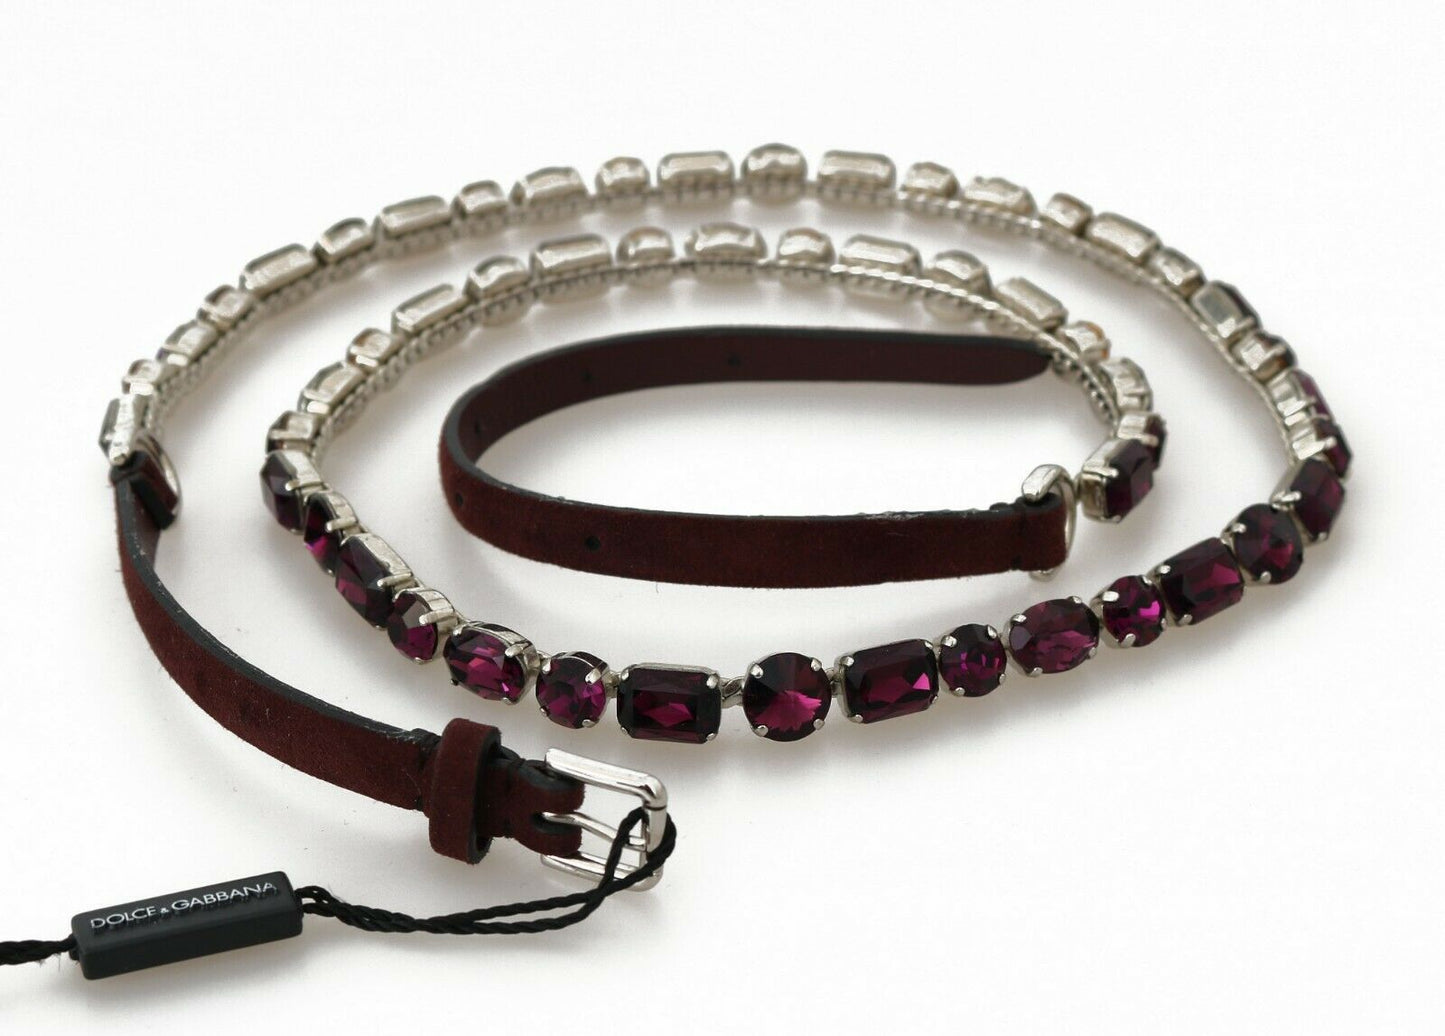 Dolce & Gabbana Elegant Leather Crystal-Embellished Belt